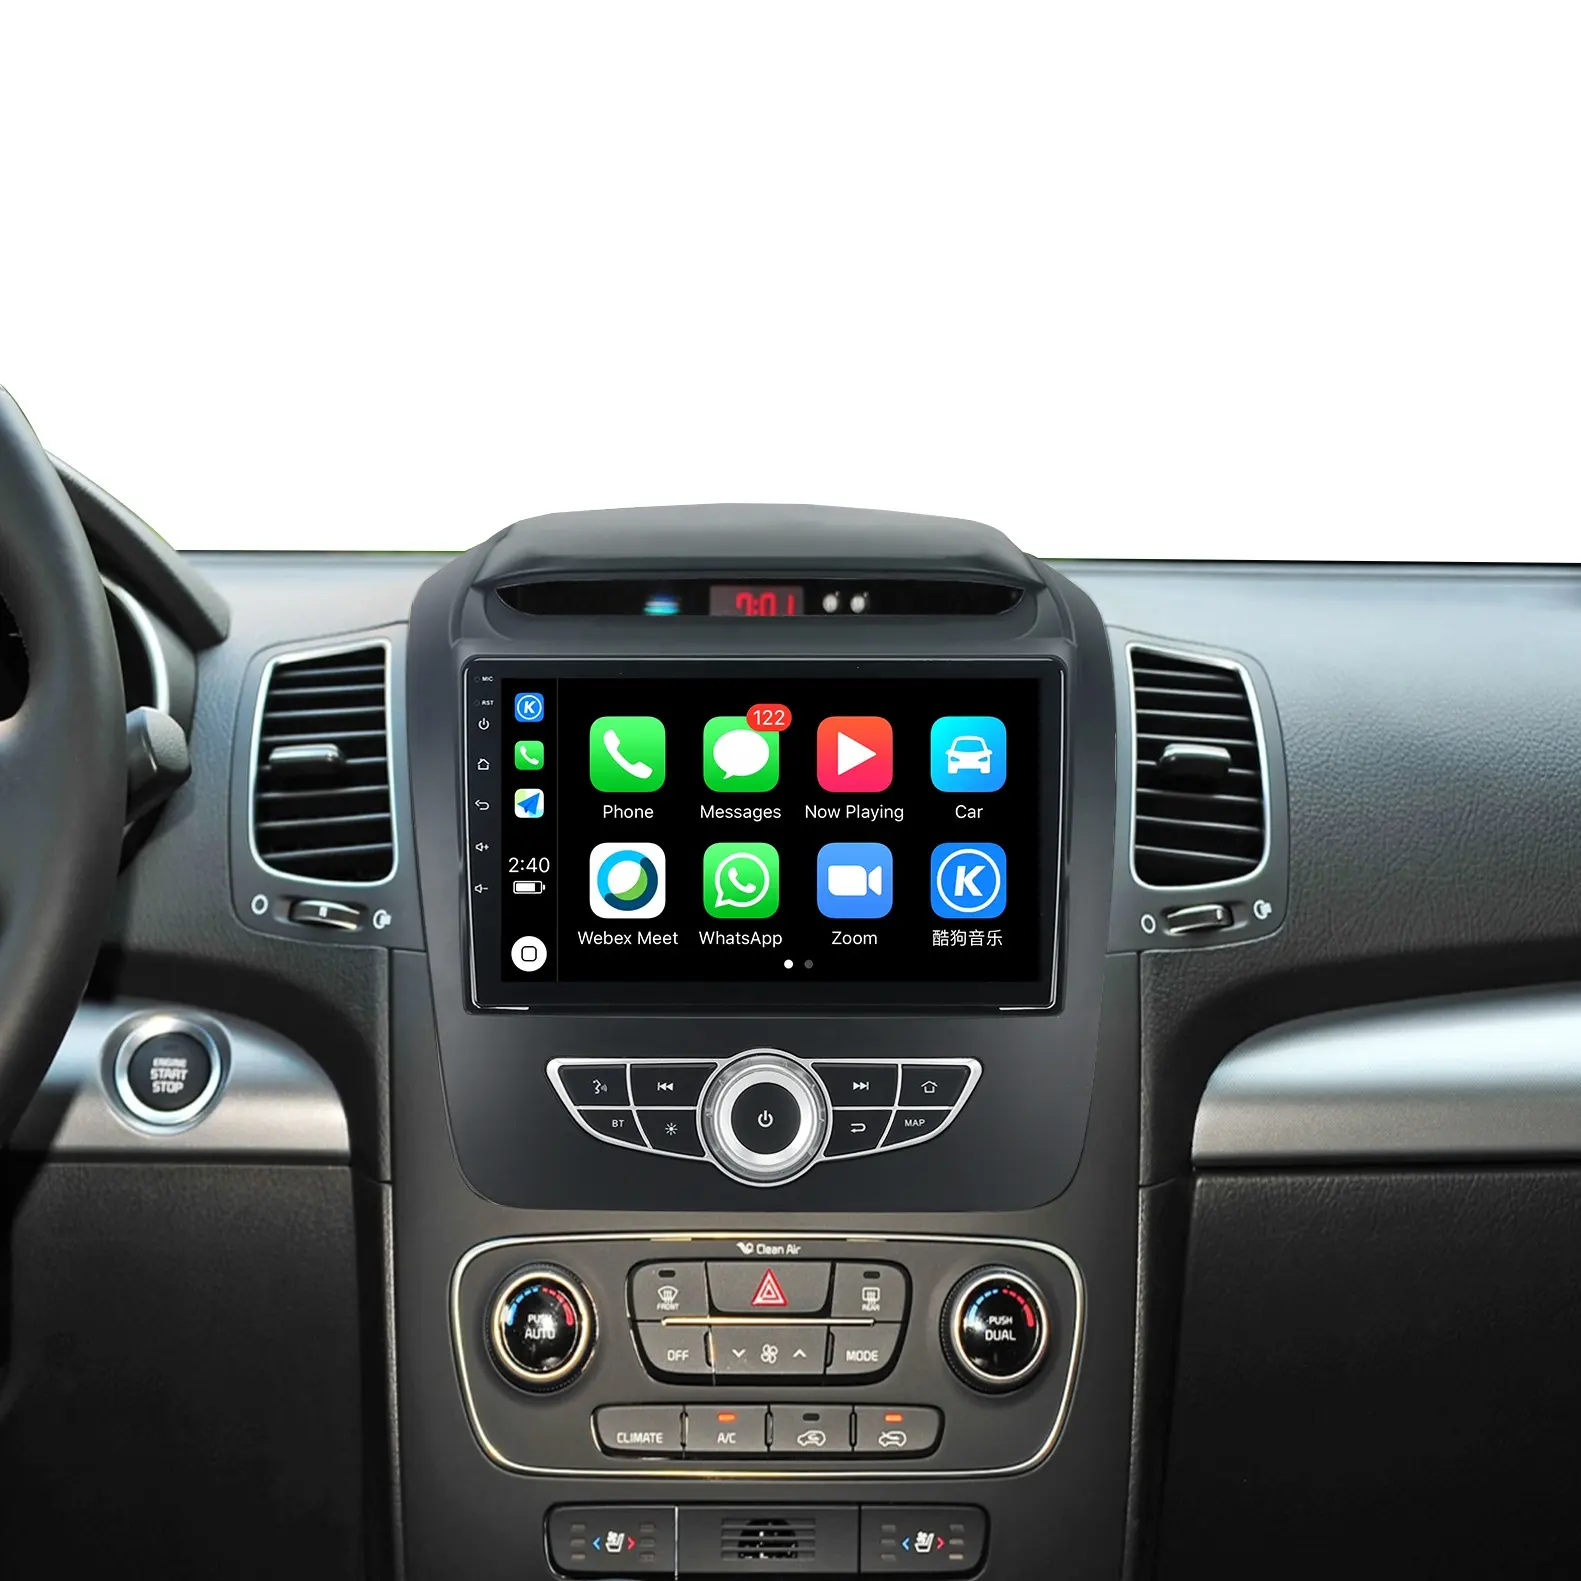 راديو للسيارة من Kia 2 II XM 2-soring Car Multimedia ملاحة ستيريو بنظام تحديد المواقع أندرويد لا 2din dvd